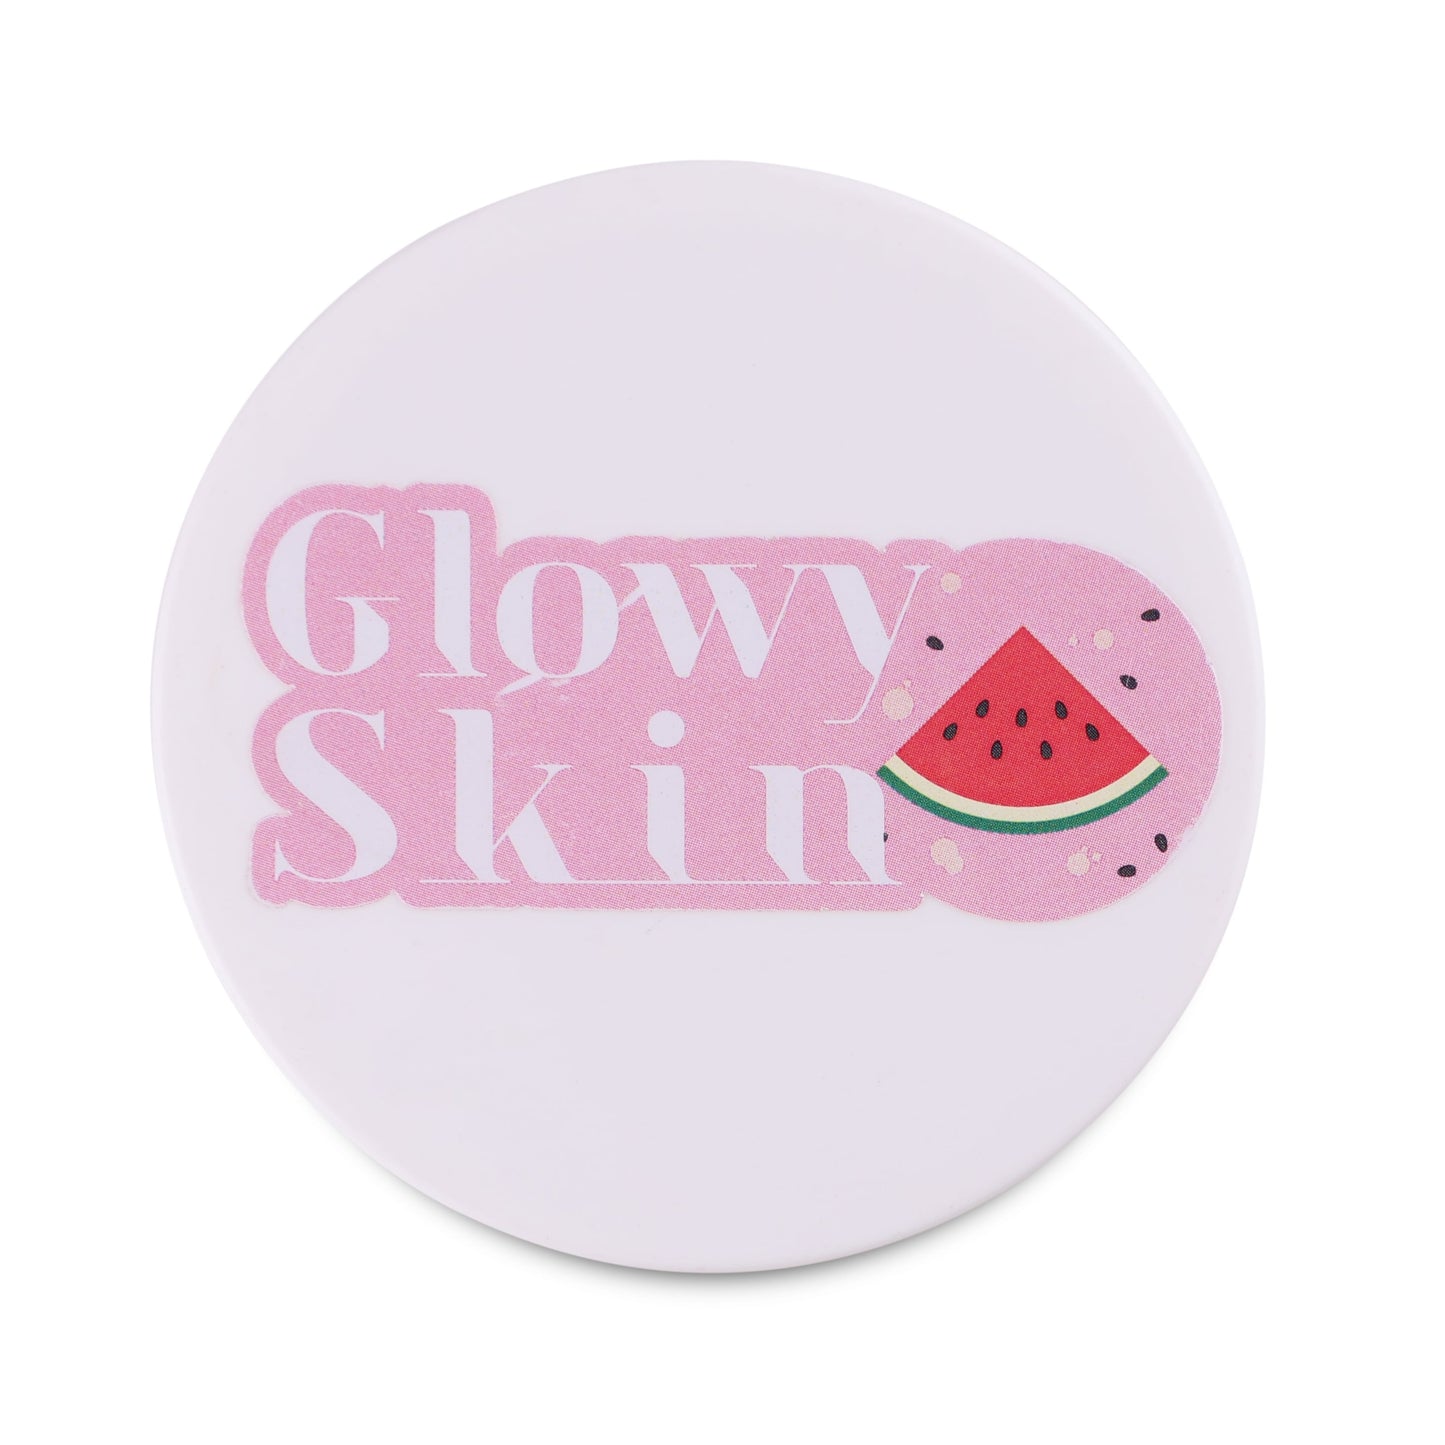 Pinkmelon Slay Clay Mask for Dry Skin - Glowy Skin